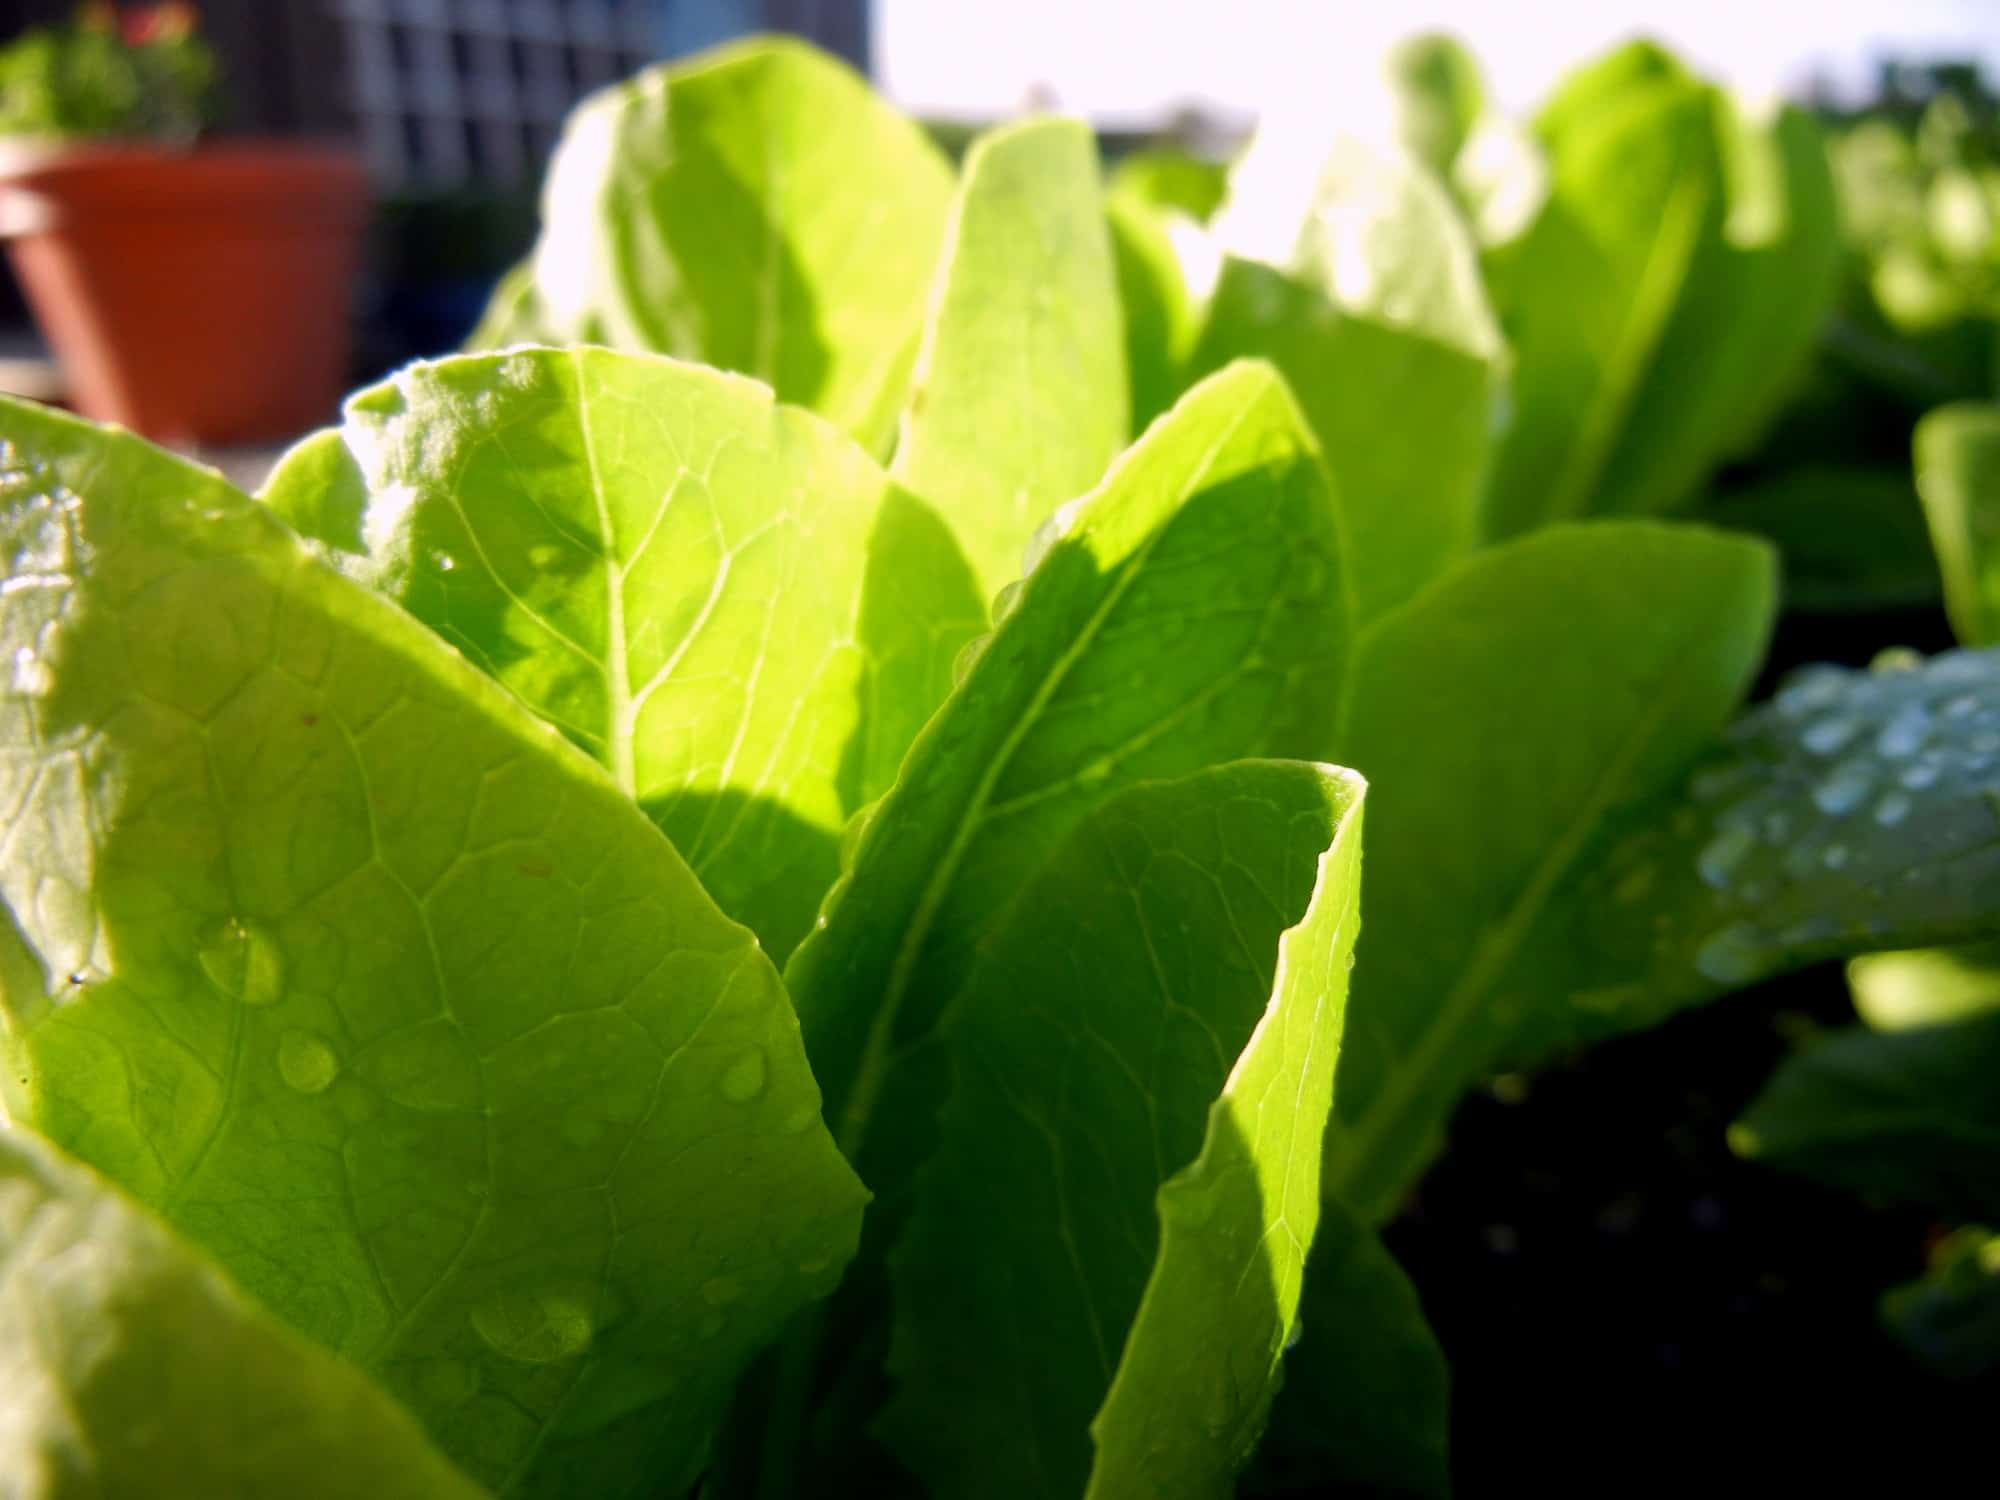  Romaine lettuce